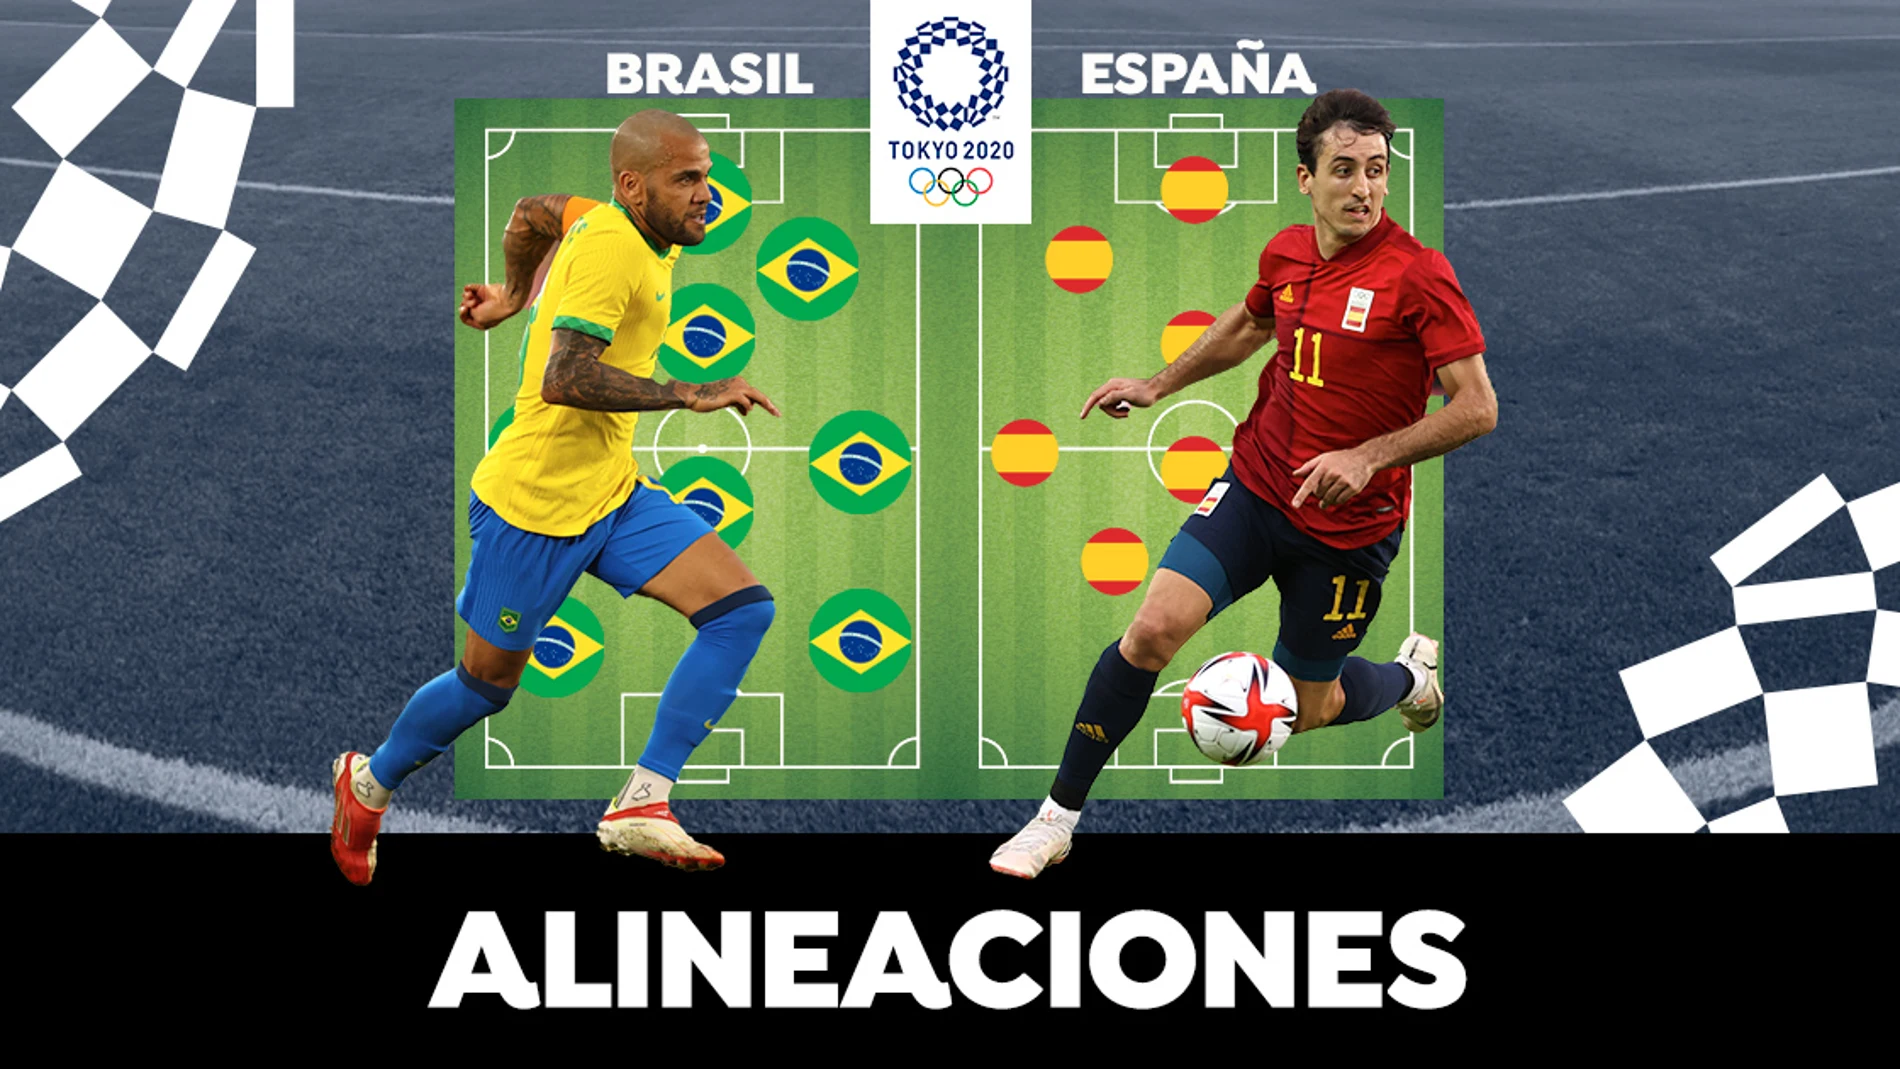 España - Brasil: Alineaciones del partido de fútbol de los Juegos Olímpicos de Tokio